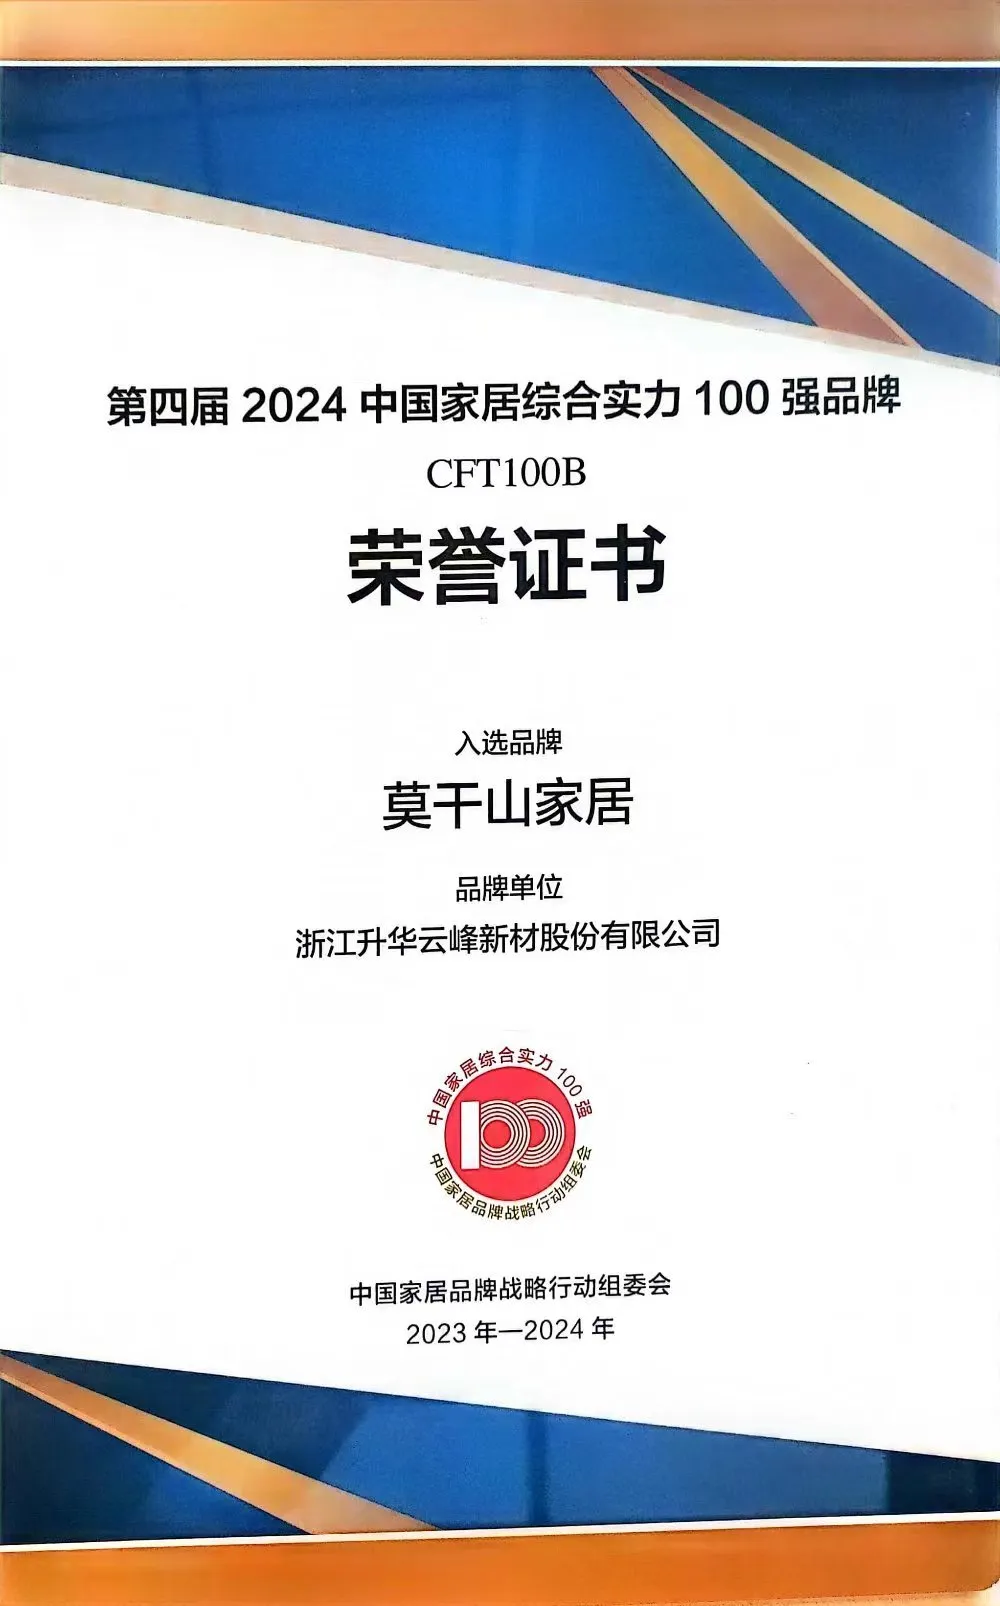 4月22日，莫干山家居被中国家居品牌战略行动组委会评选为“2024中国家居综合实力100强品牌”